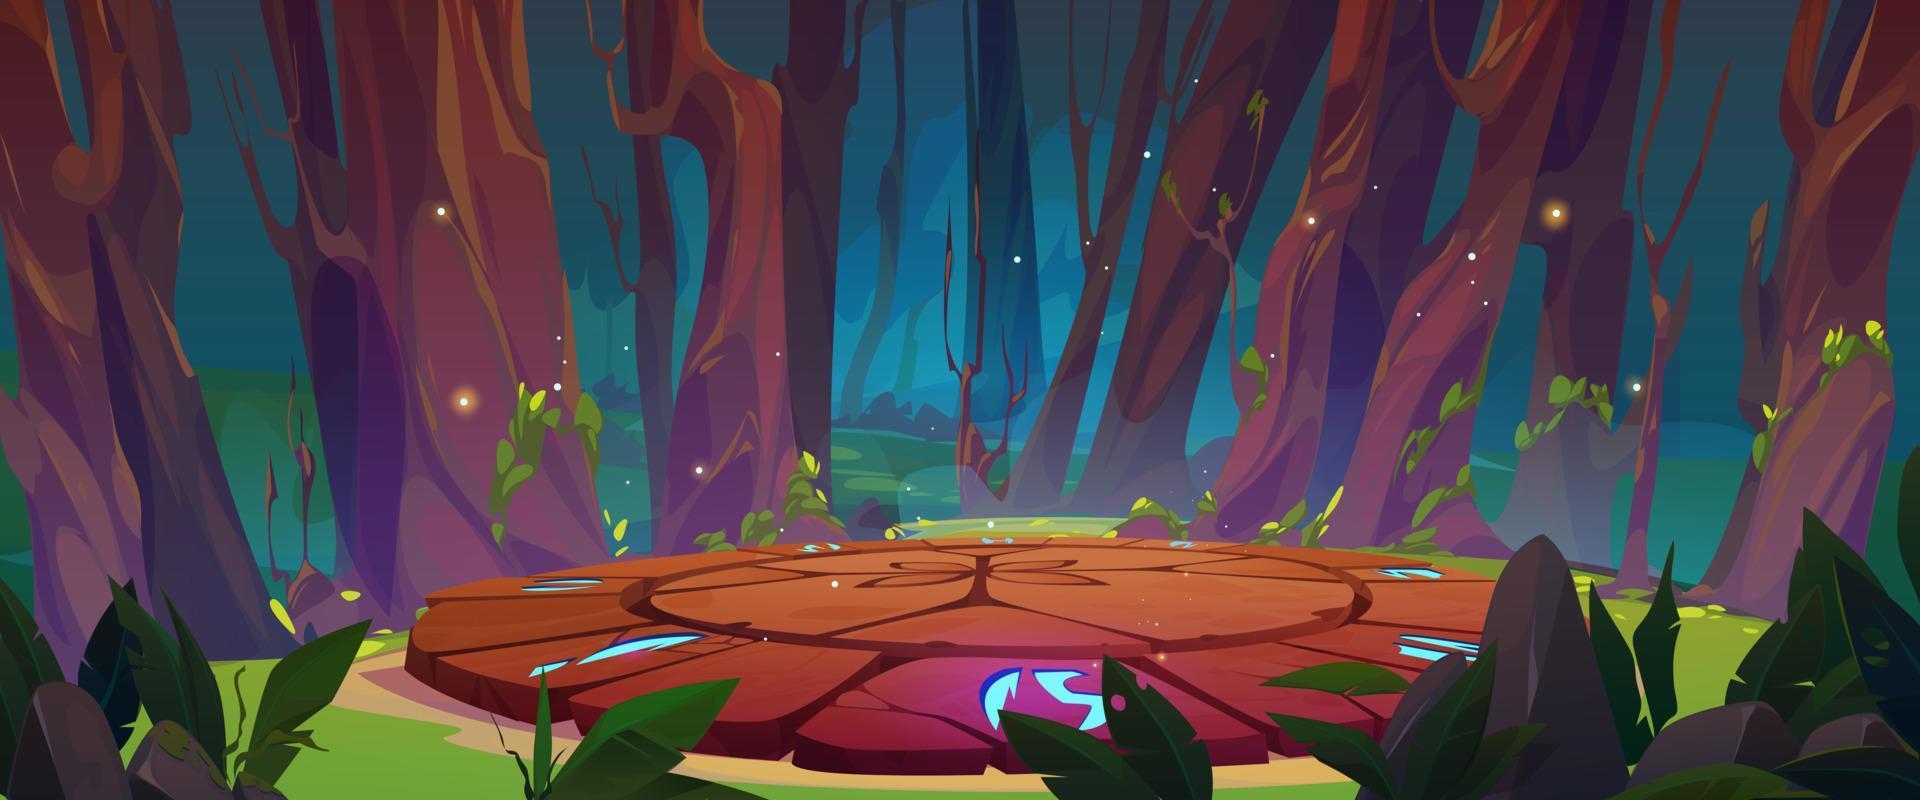 dibujos animados juego plataforma en antiguo bosque vector